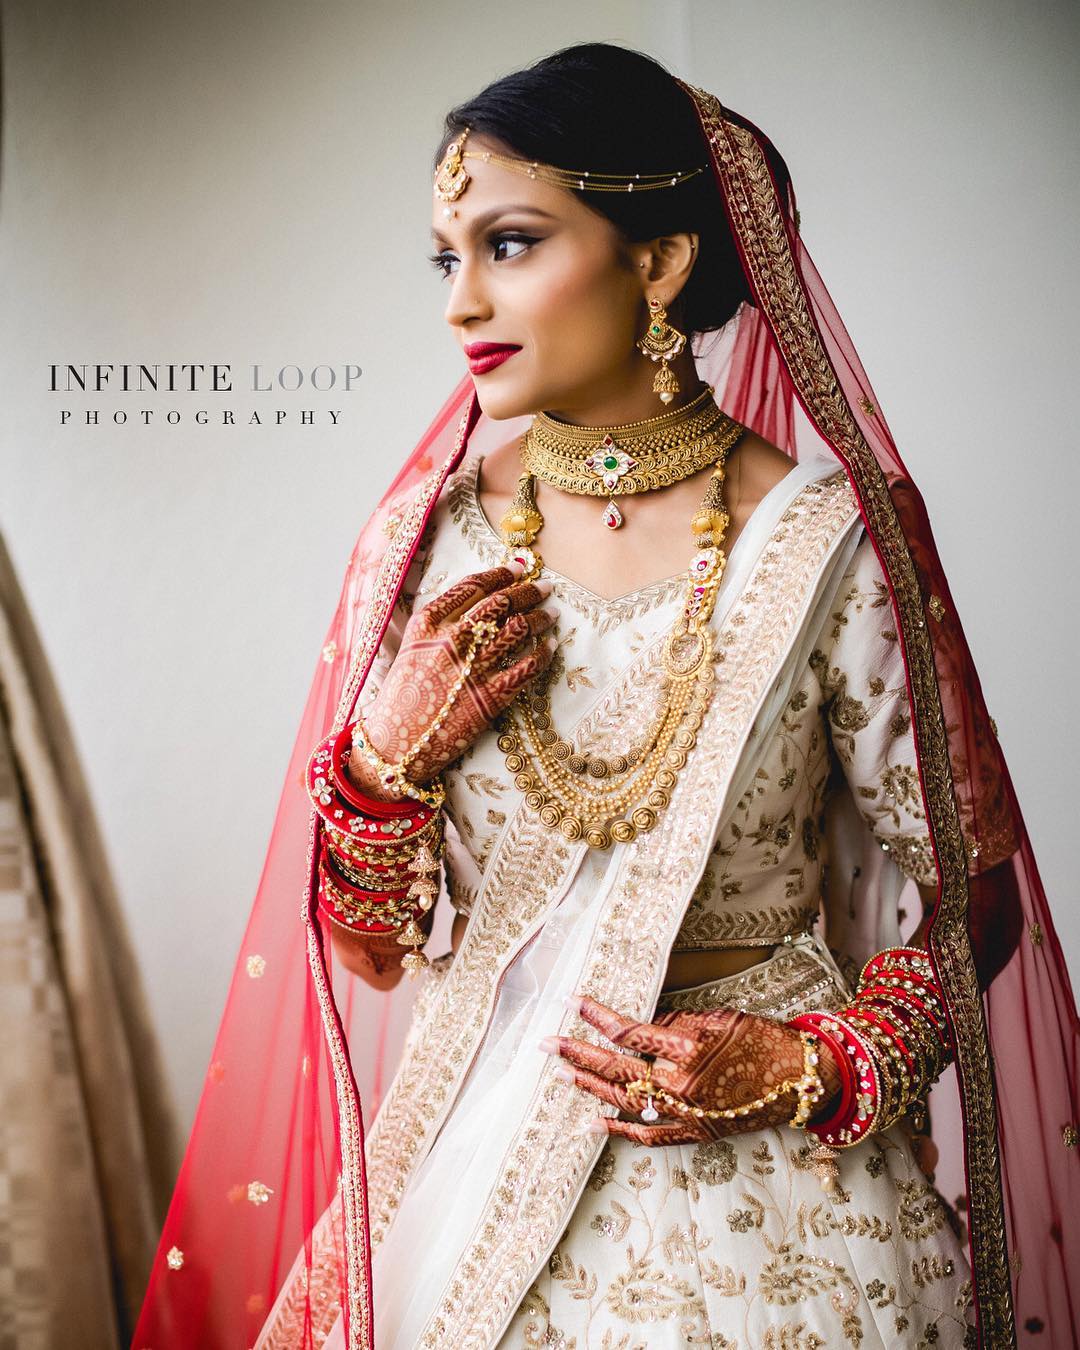 A portrait of an Indian bride